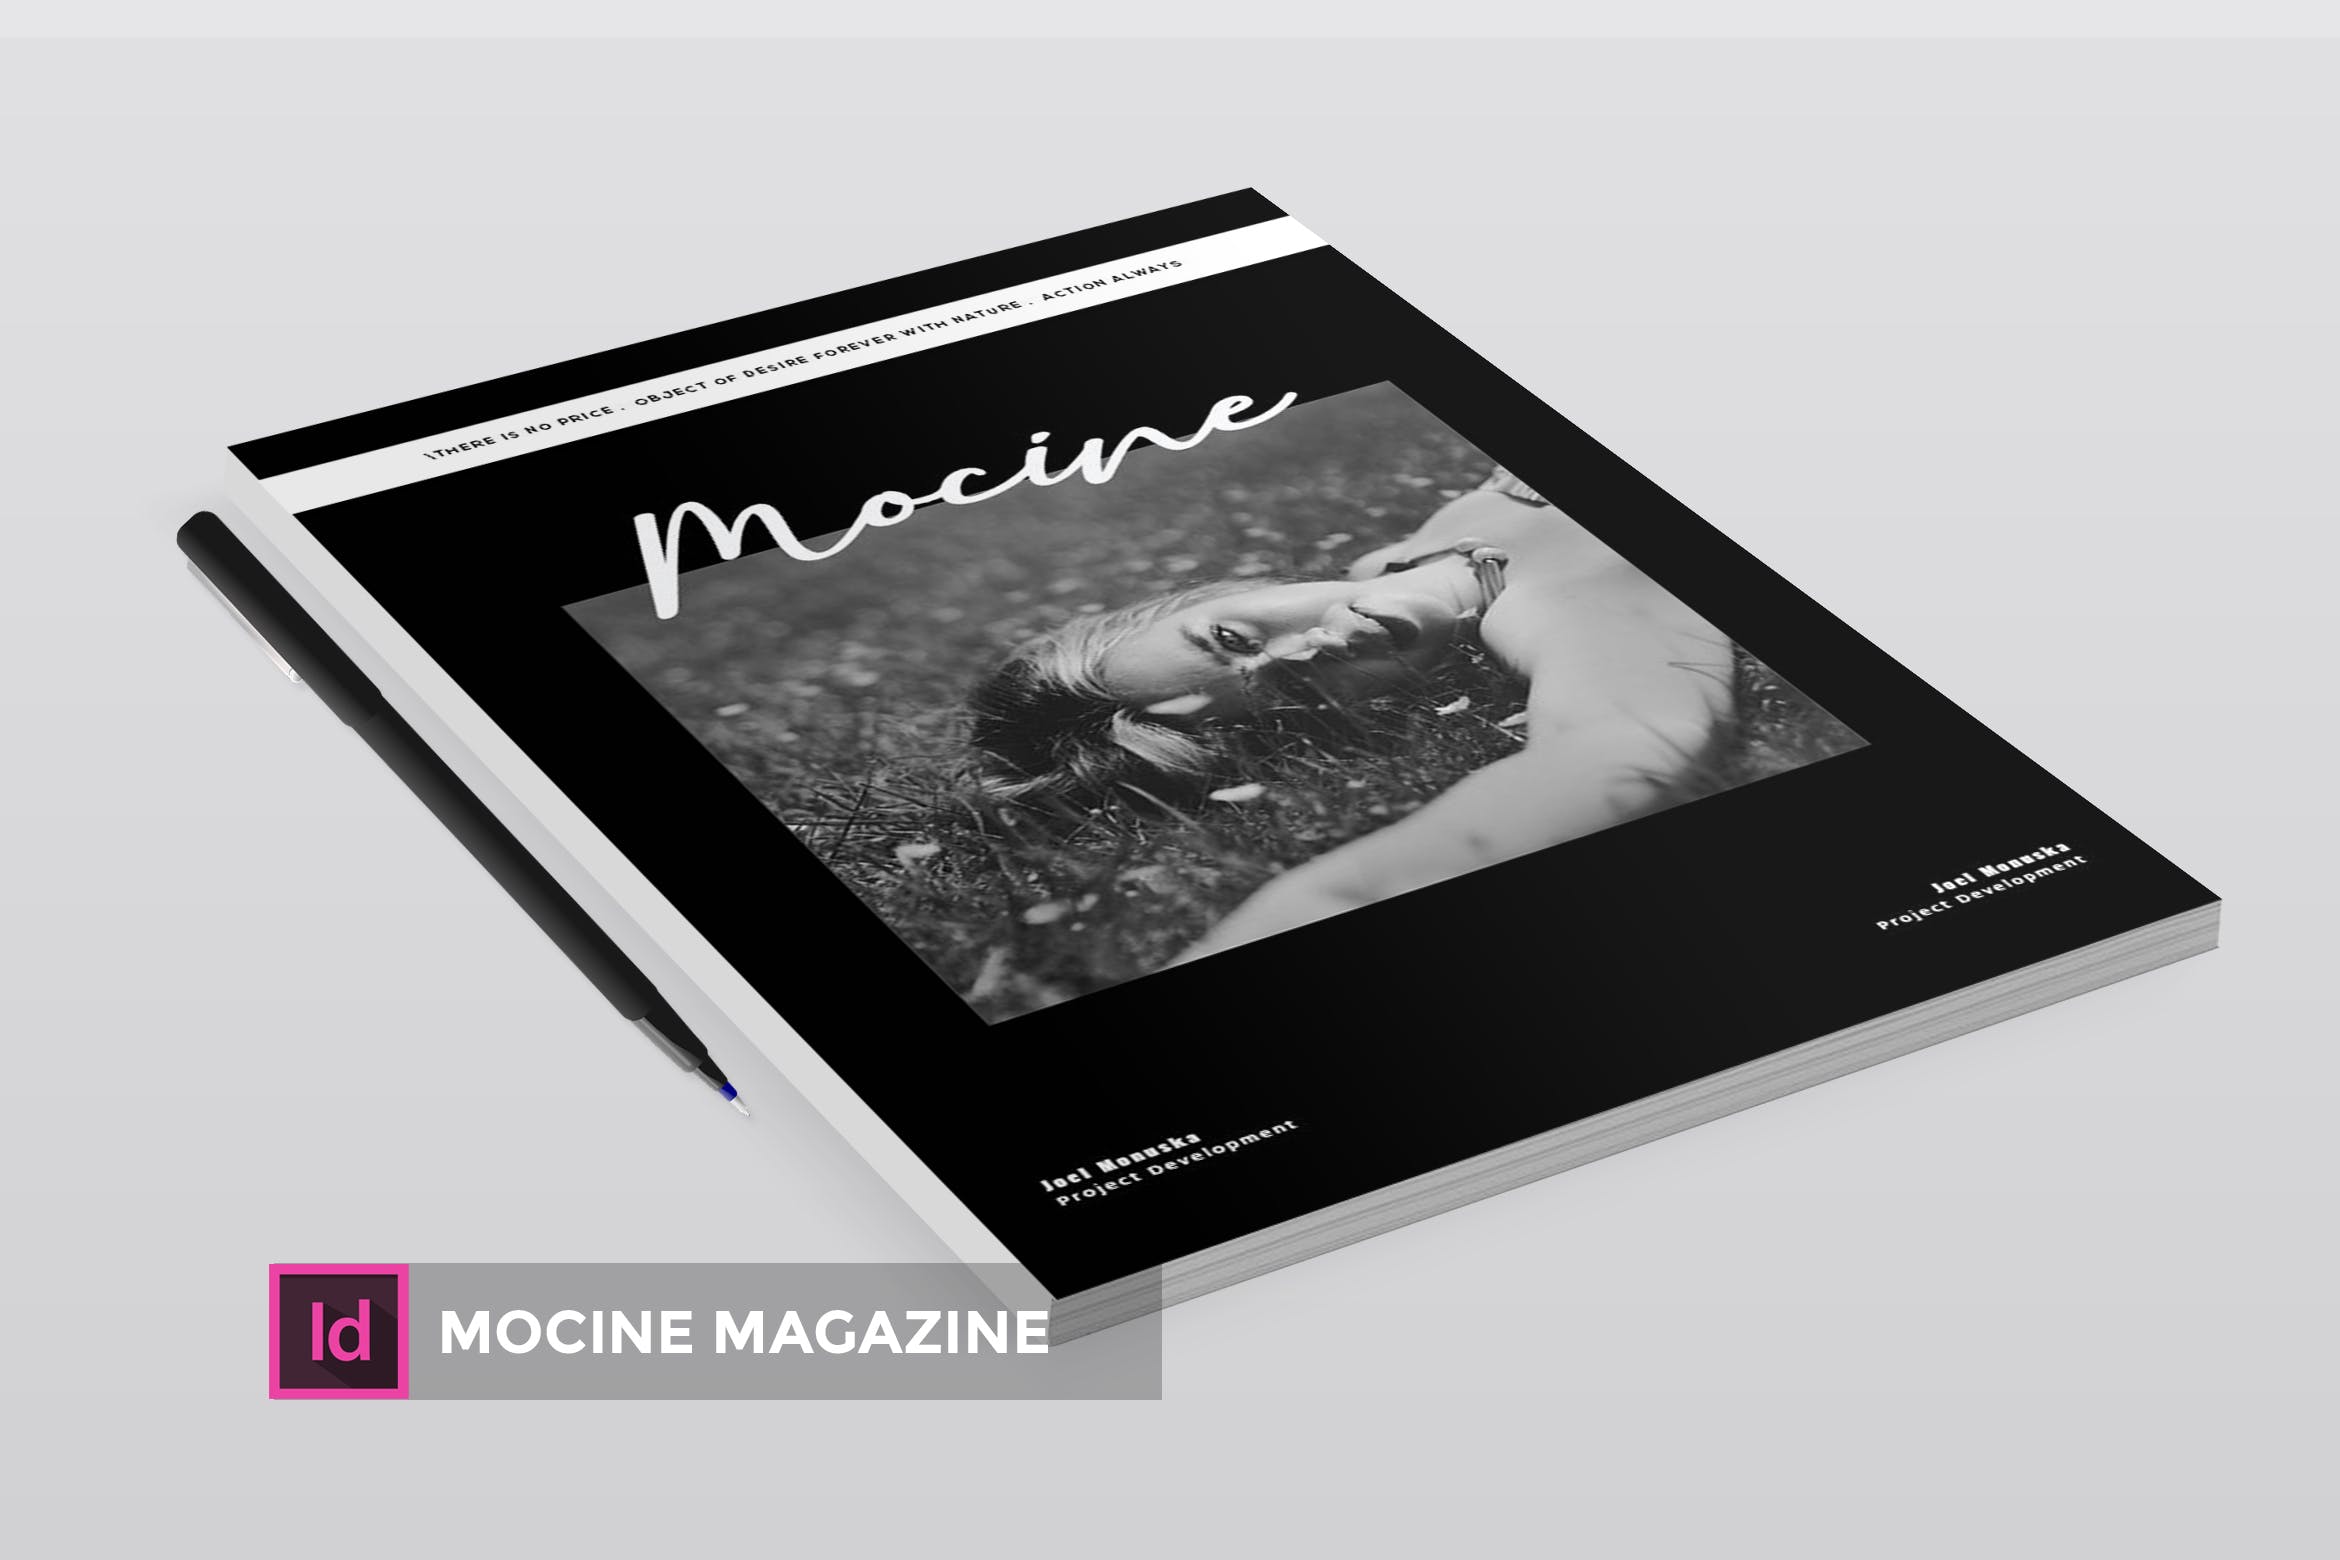 高端人物/摄影/时尚主题素材库精选杂志版式排版设计INDD模板 Mocine | Magazine Template插图